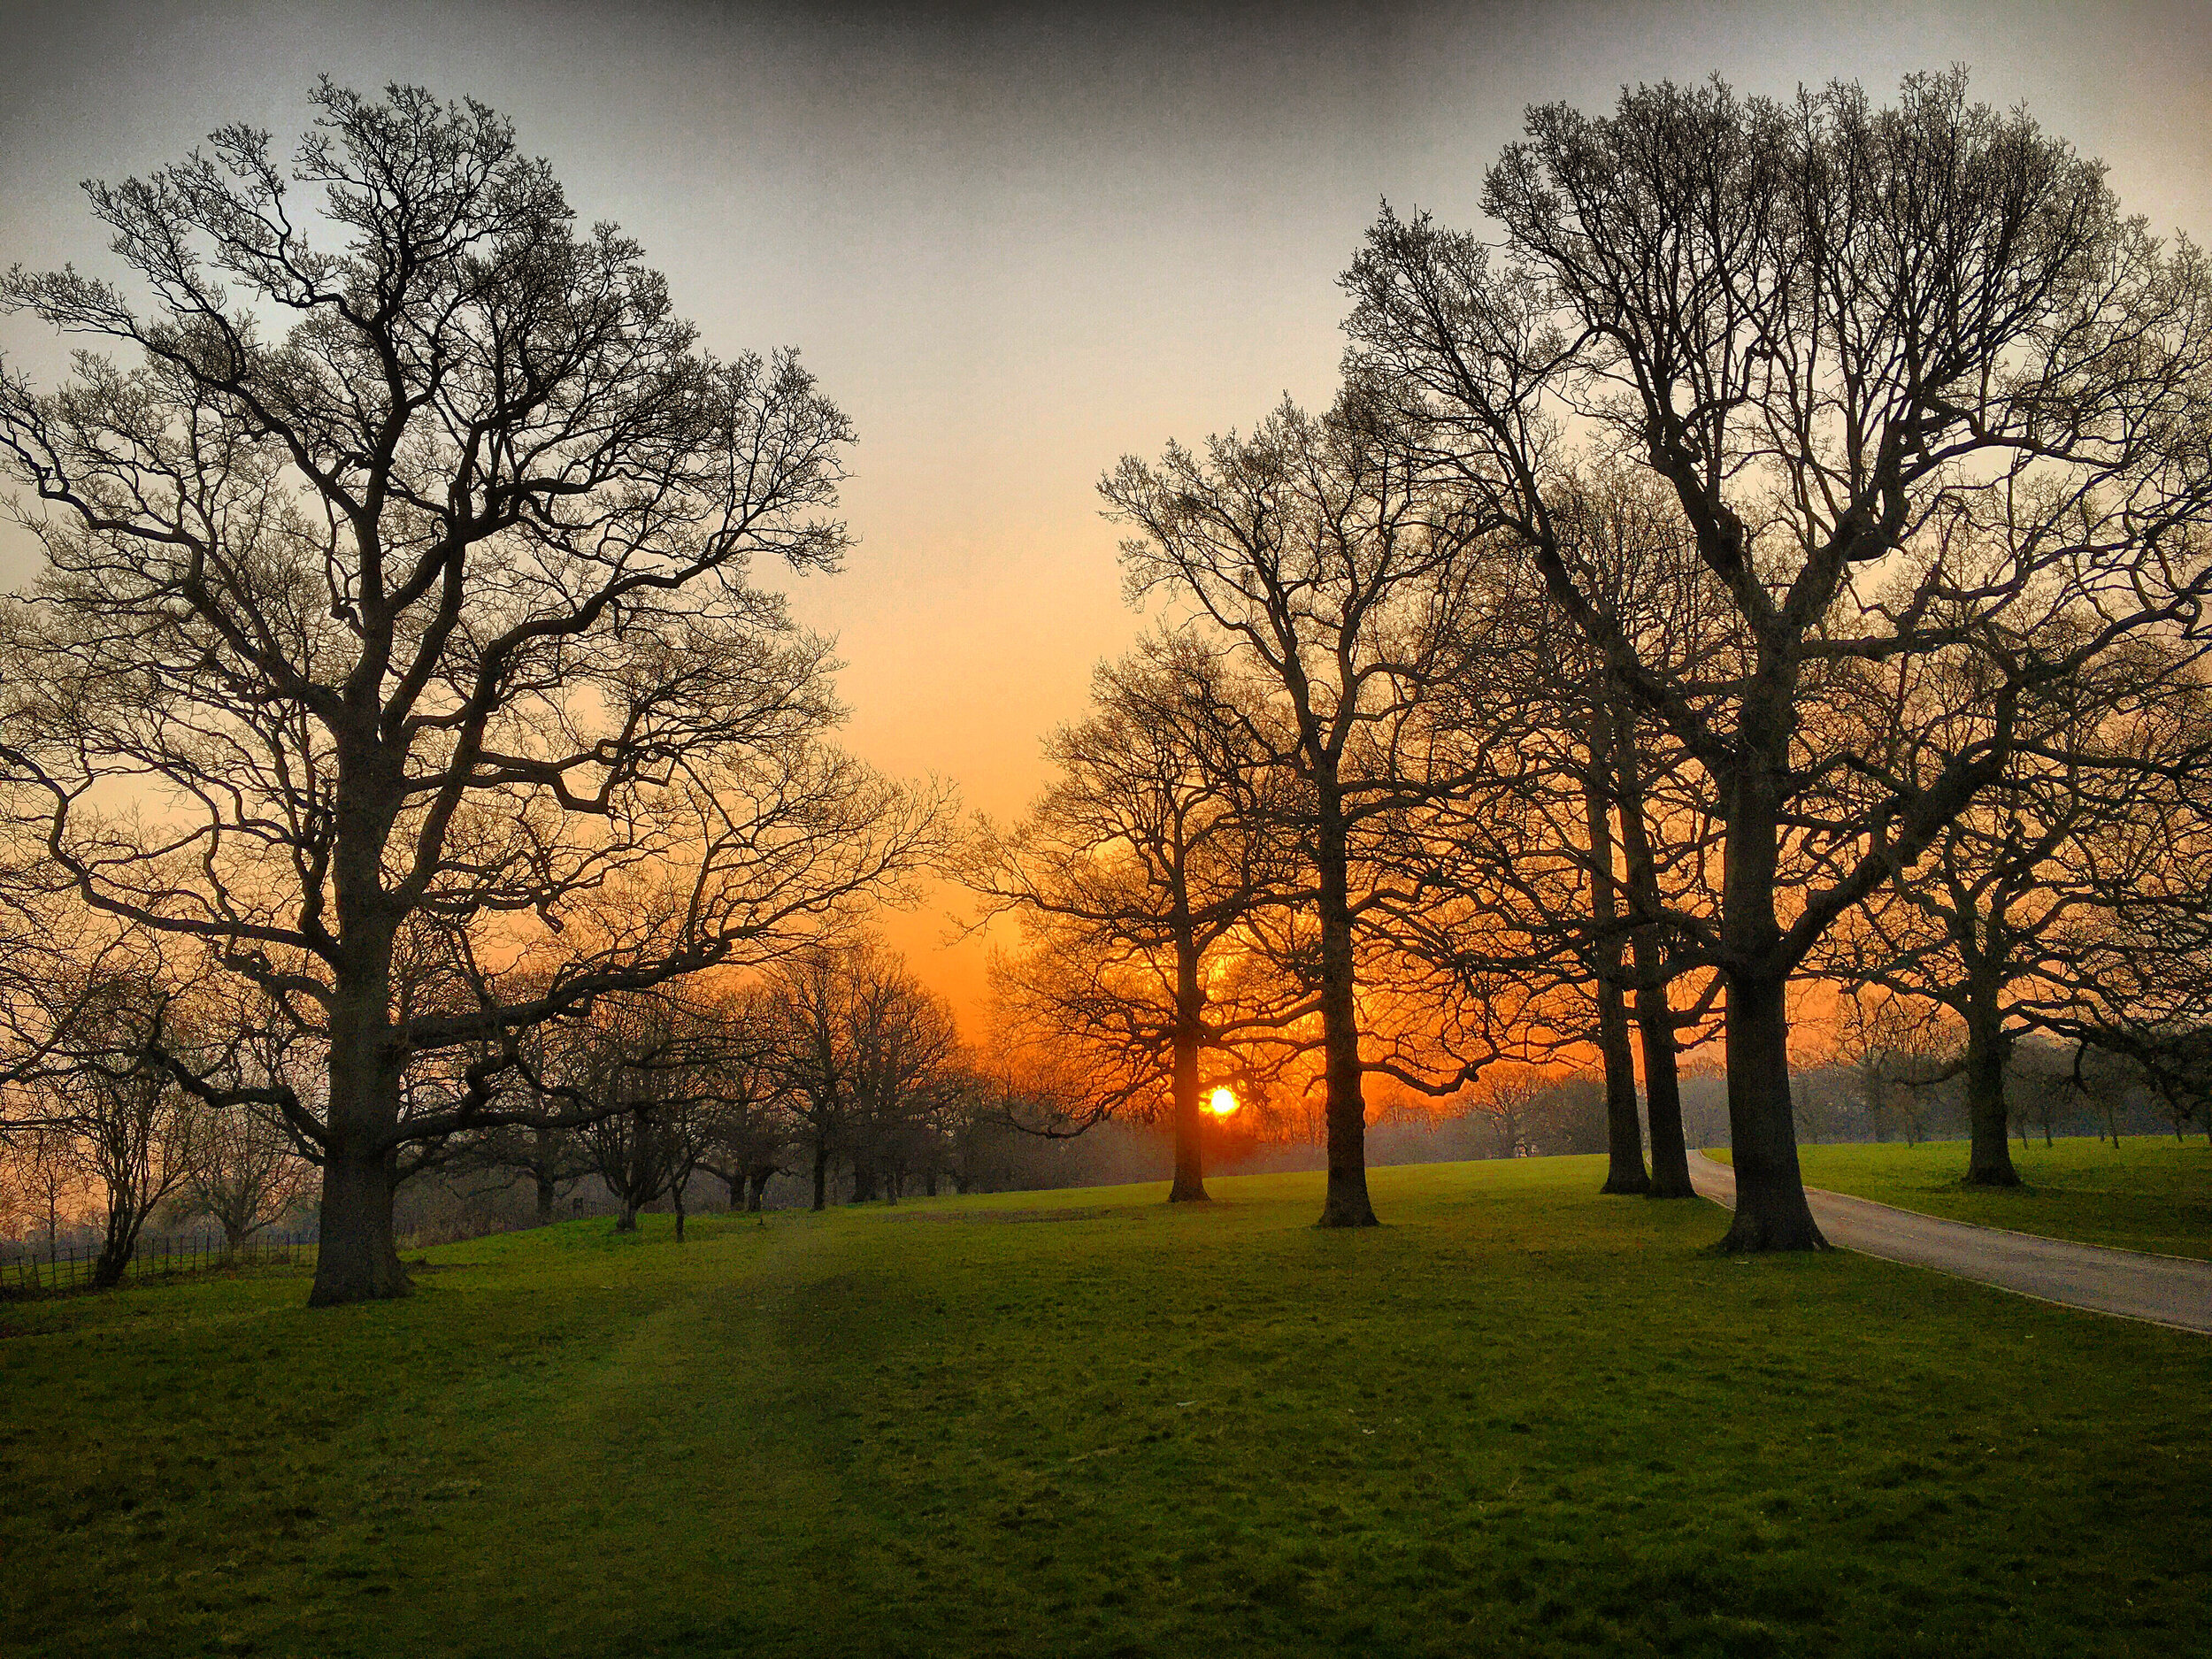 Somerhill Park at sunrise